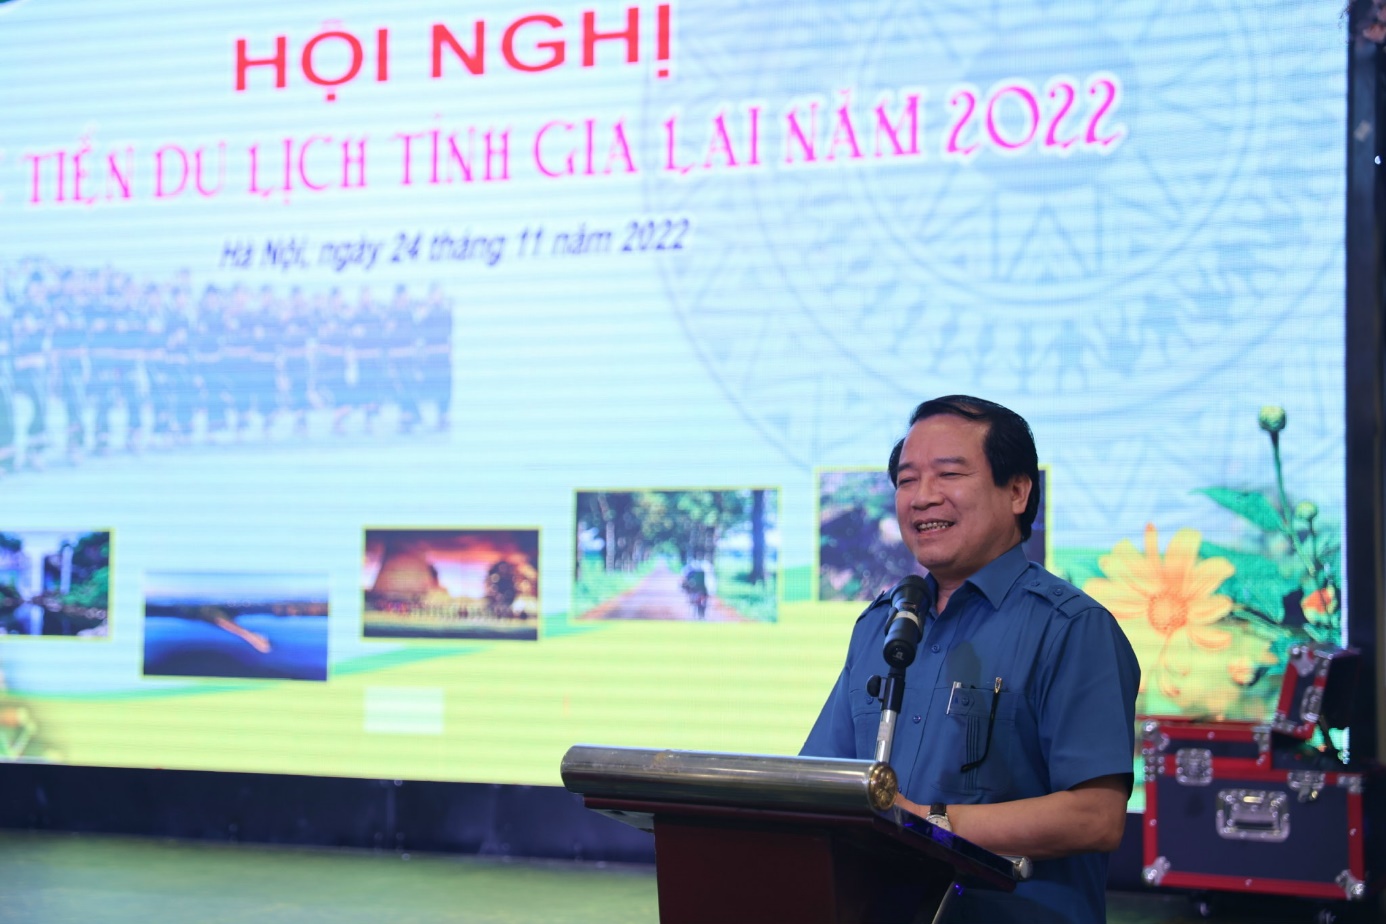 Hội nghị xúc tiến du lịch tỉnh Gia Lai năm 2022 tại Hà Nội và Thành phố Hồ Chí Minh